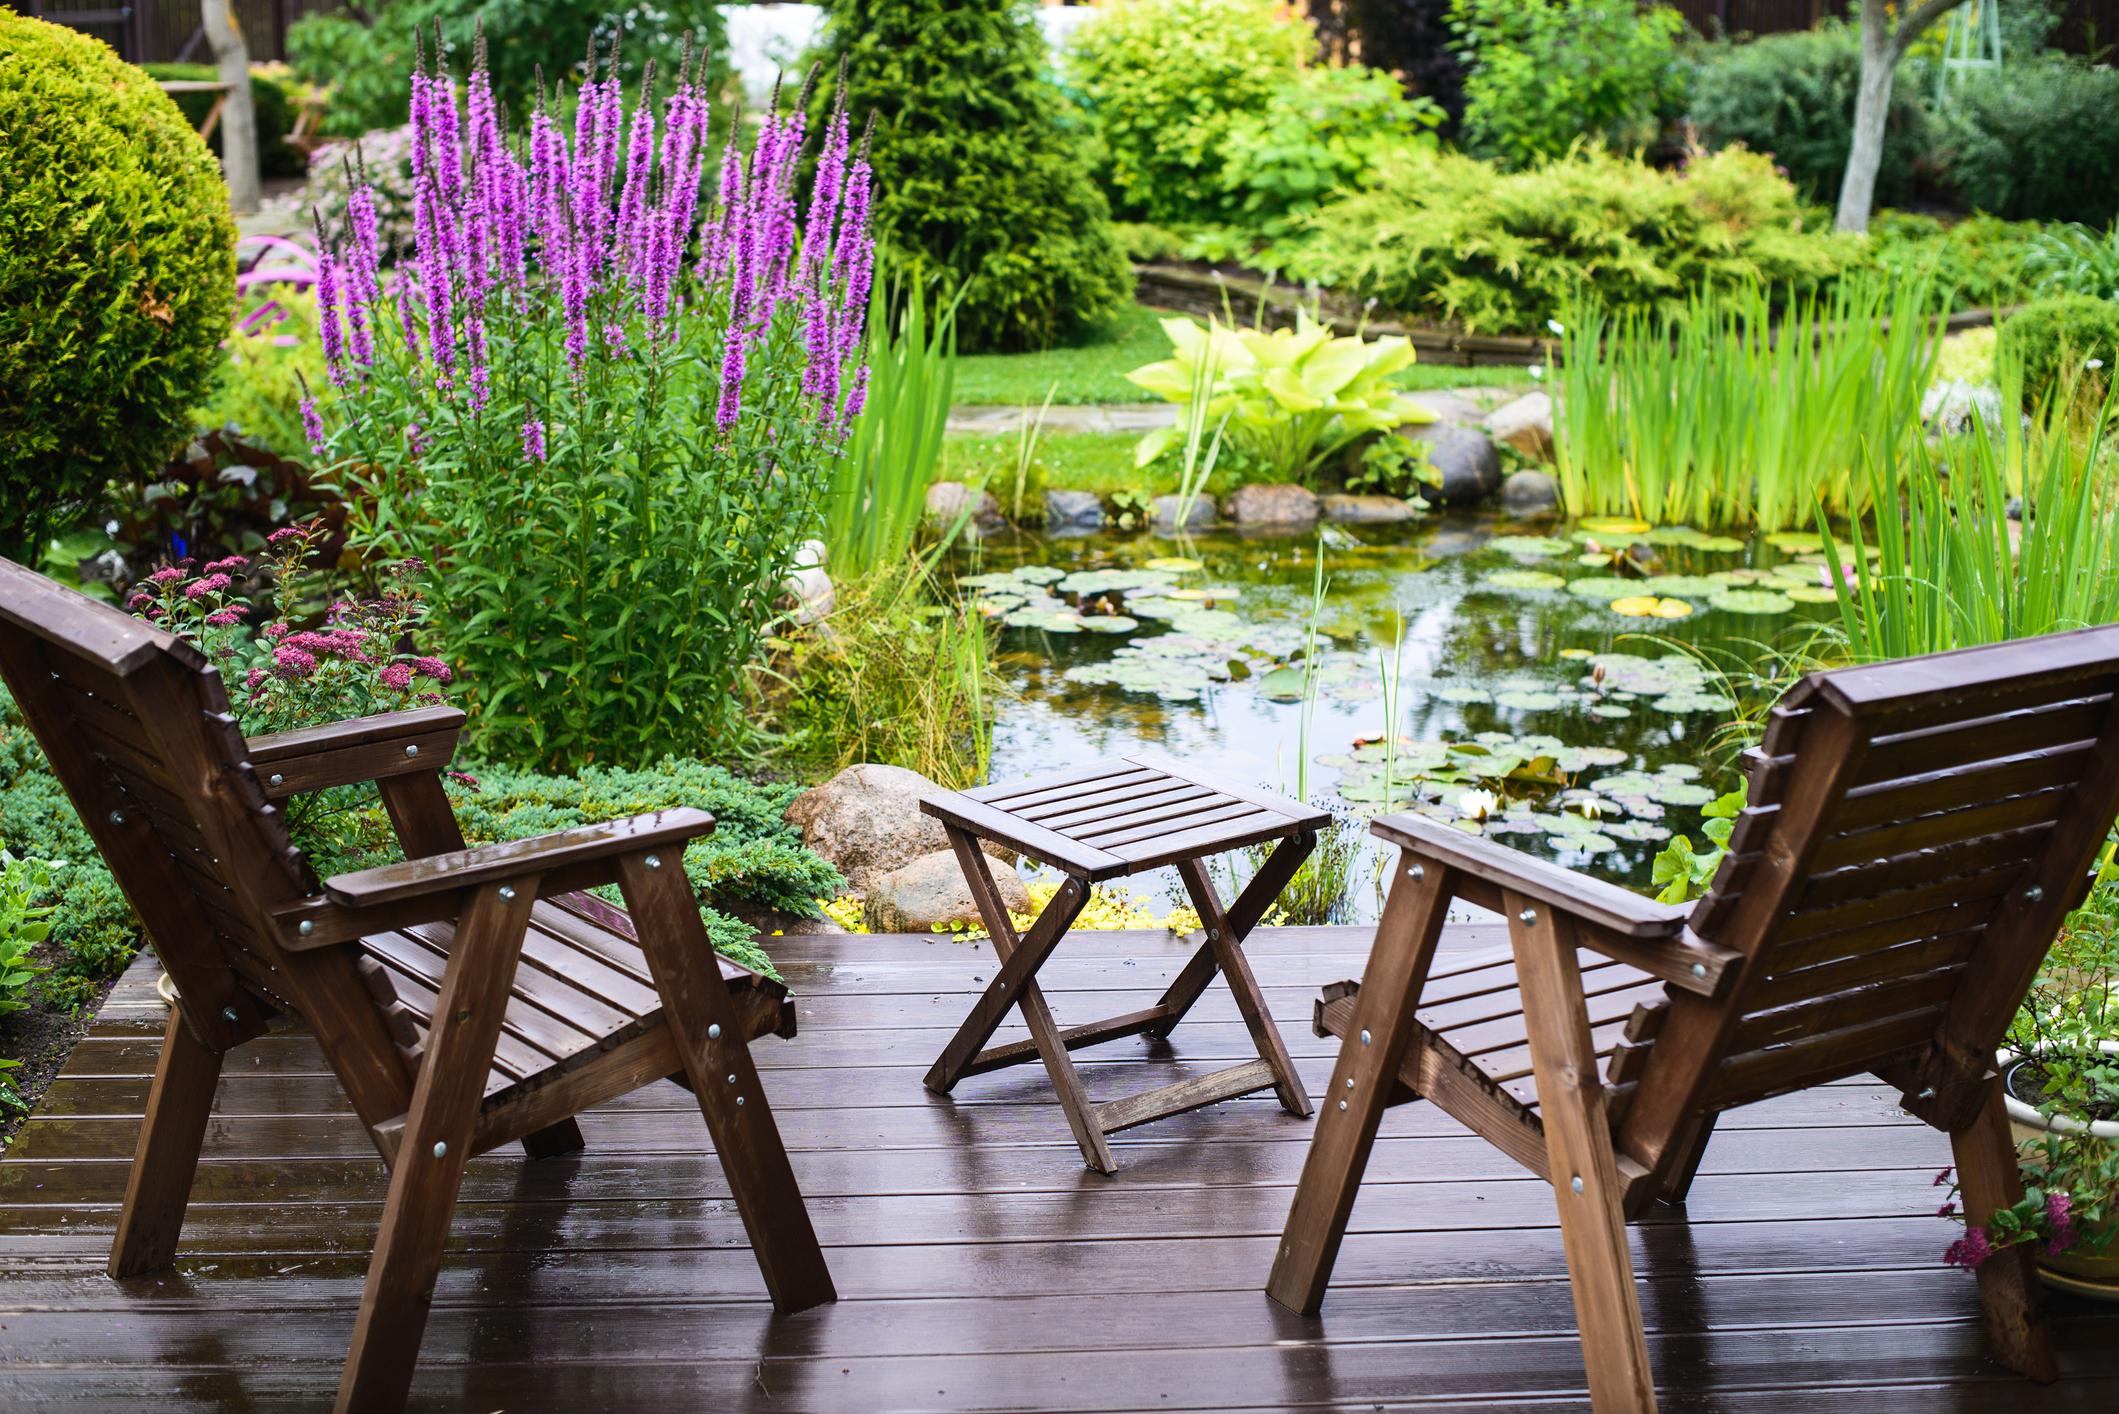  Ein Teich oder Biotop bietet Lebensqualität und fördert die Biodiversität im Garten.